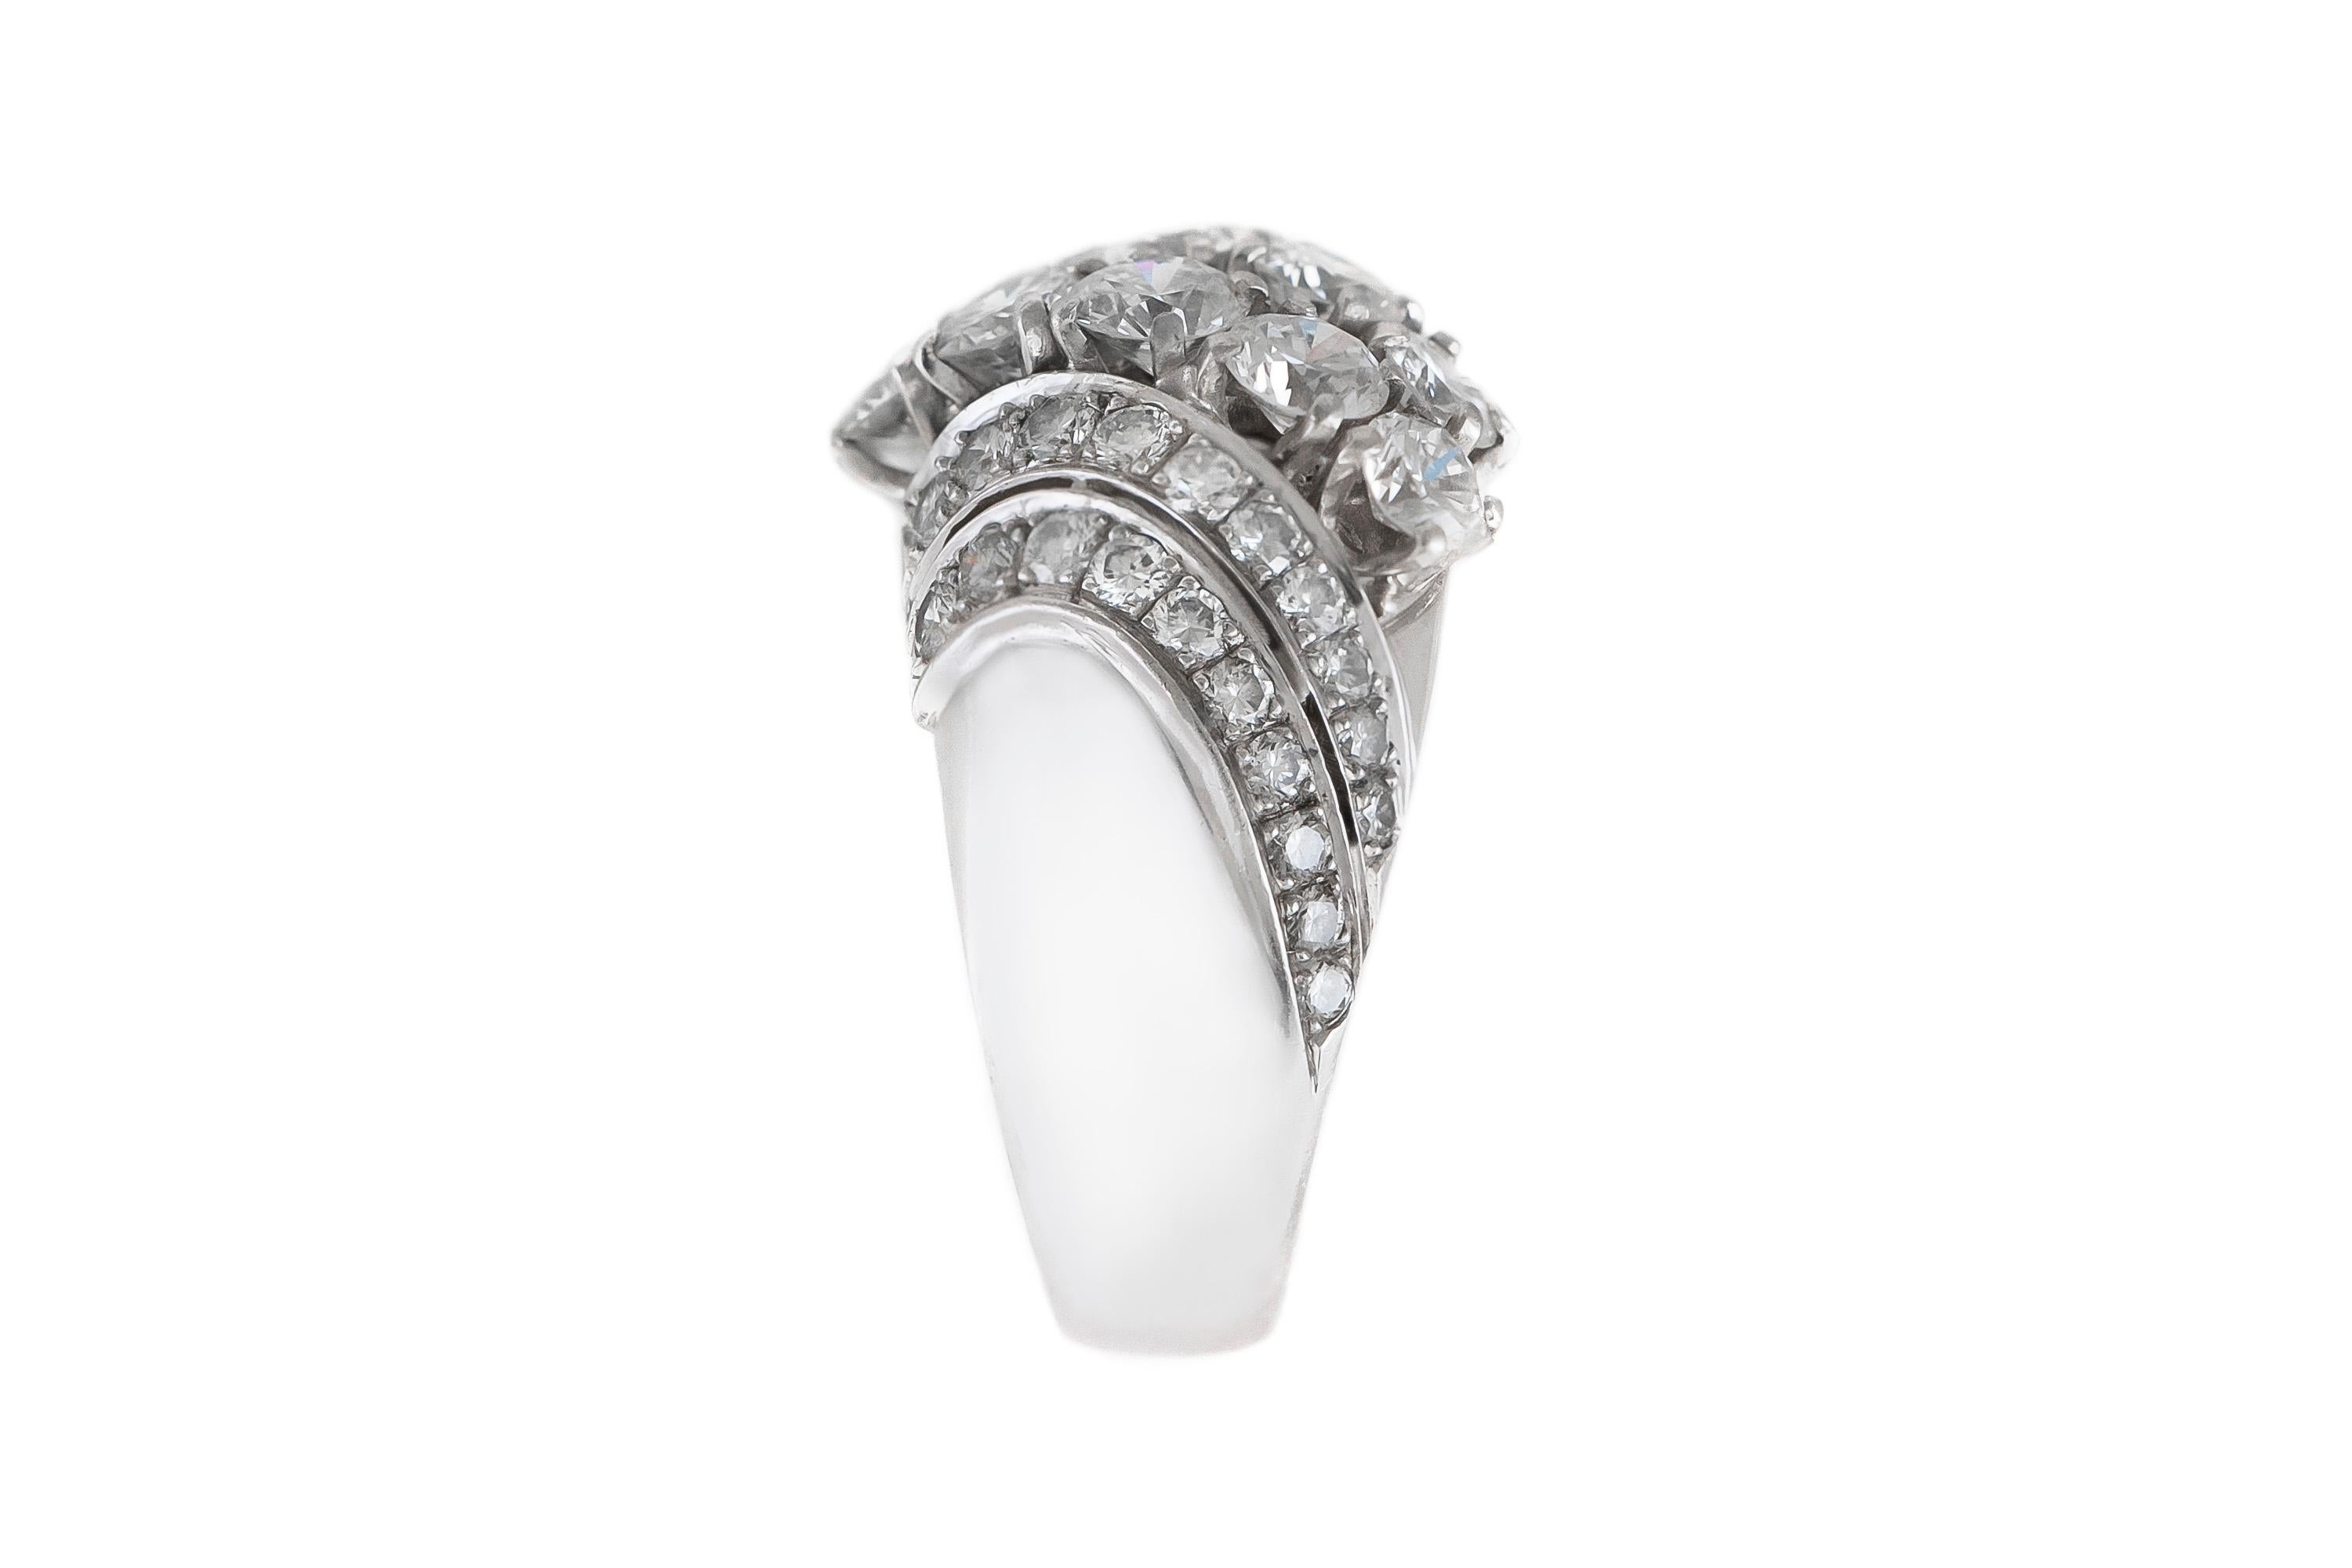 Der Ring ist aus Platin gefertigt und mit Diamanten mit einem Gesamtgewicht von etwa 3,00 Karat besetzt.
Größe 8.00 (leicht zu ändern)
Um 1940.